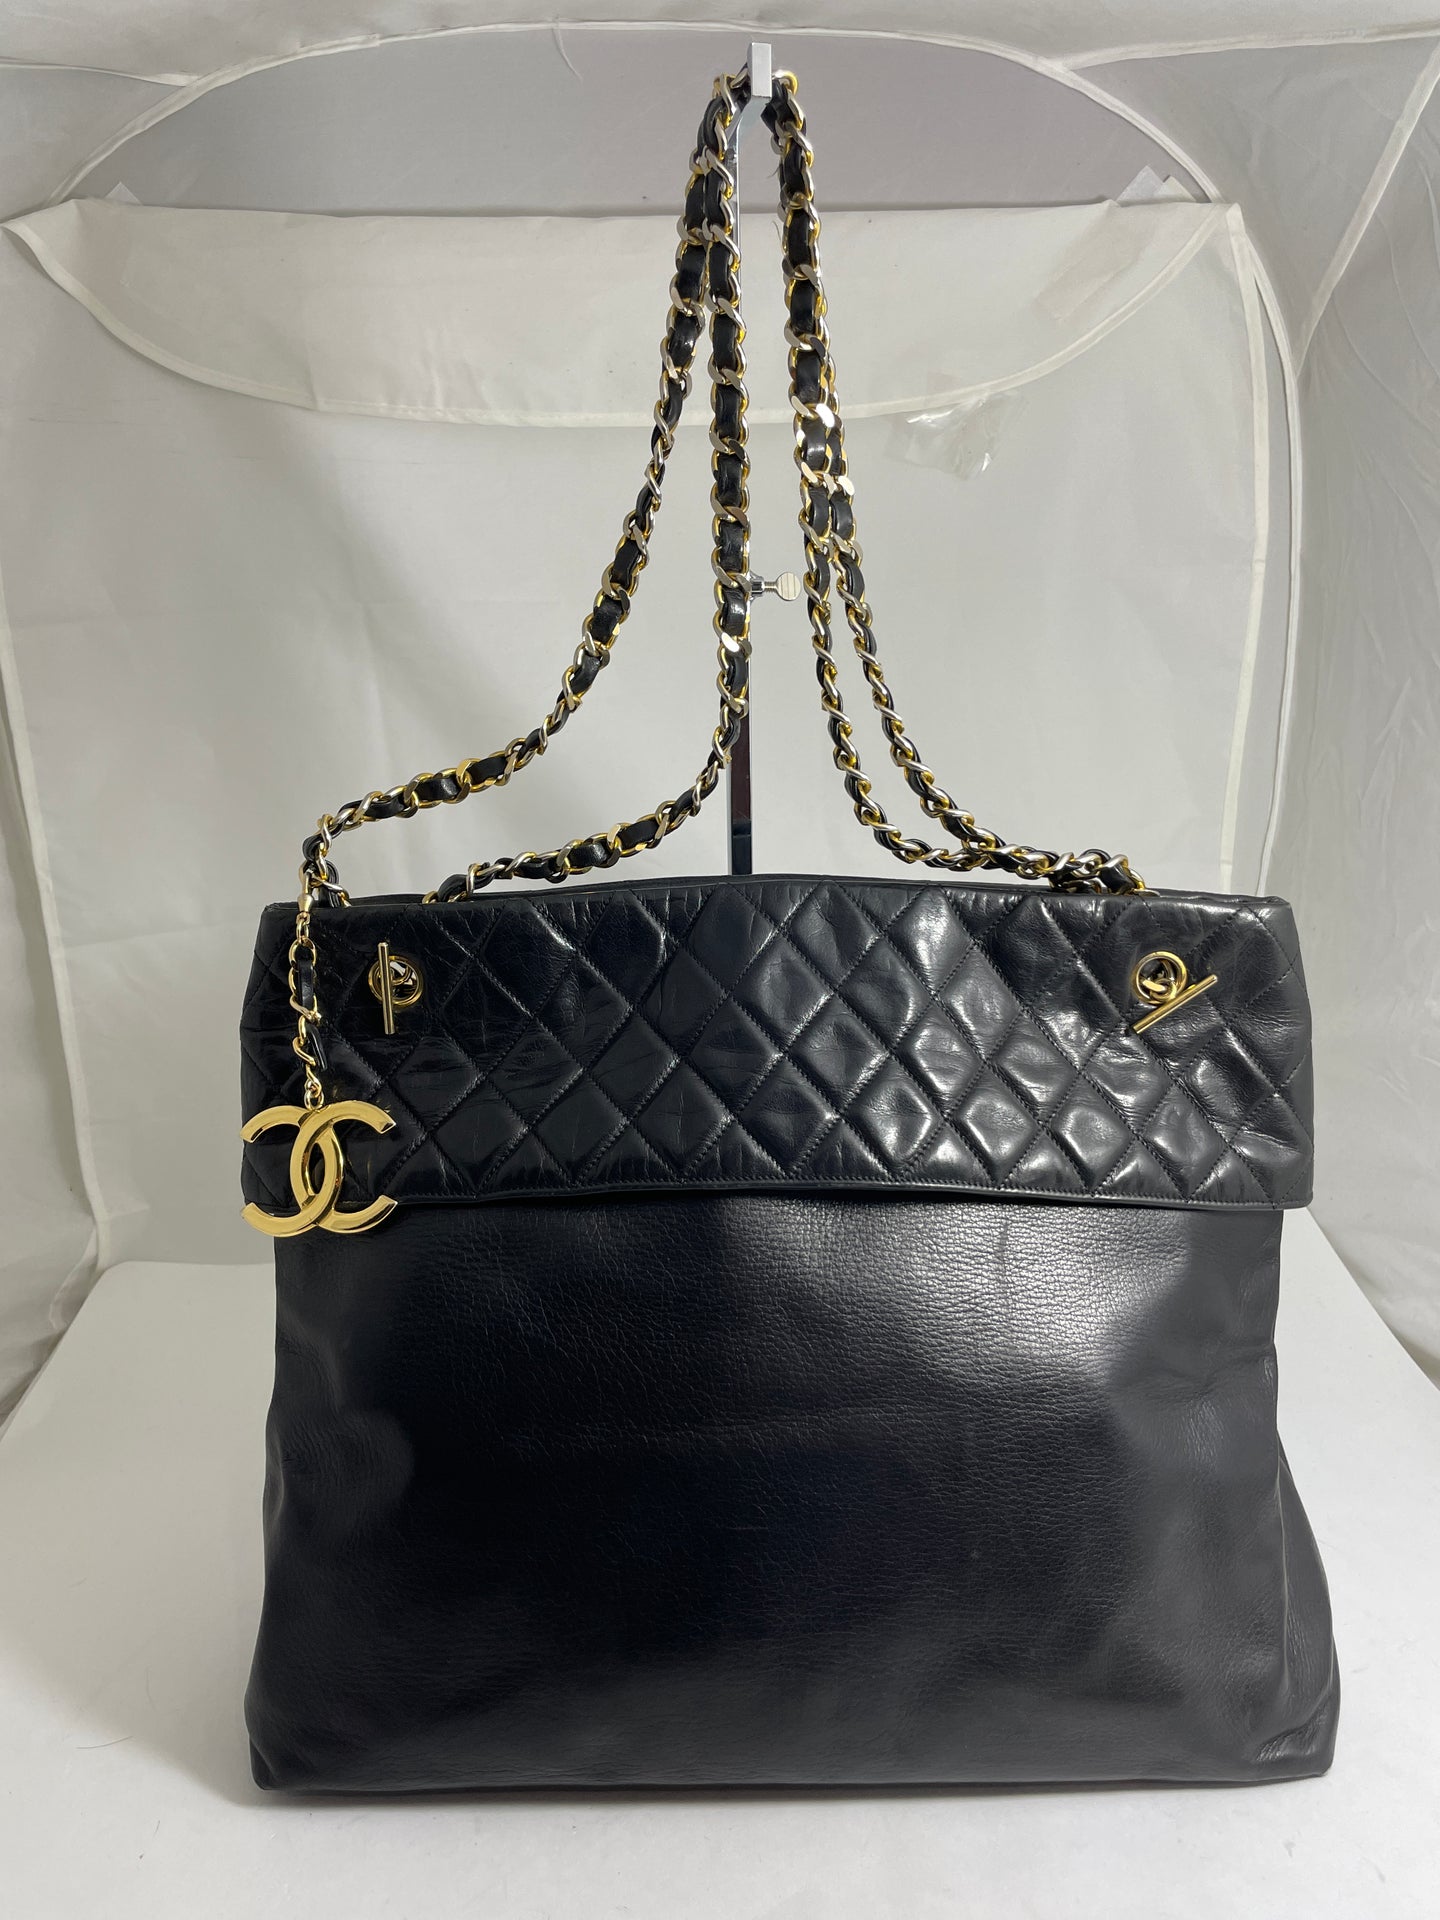 Chanel Black Leather Large Vintage Tote Handbag